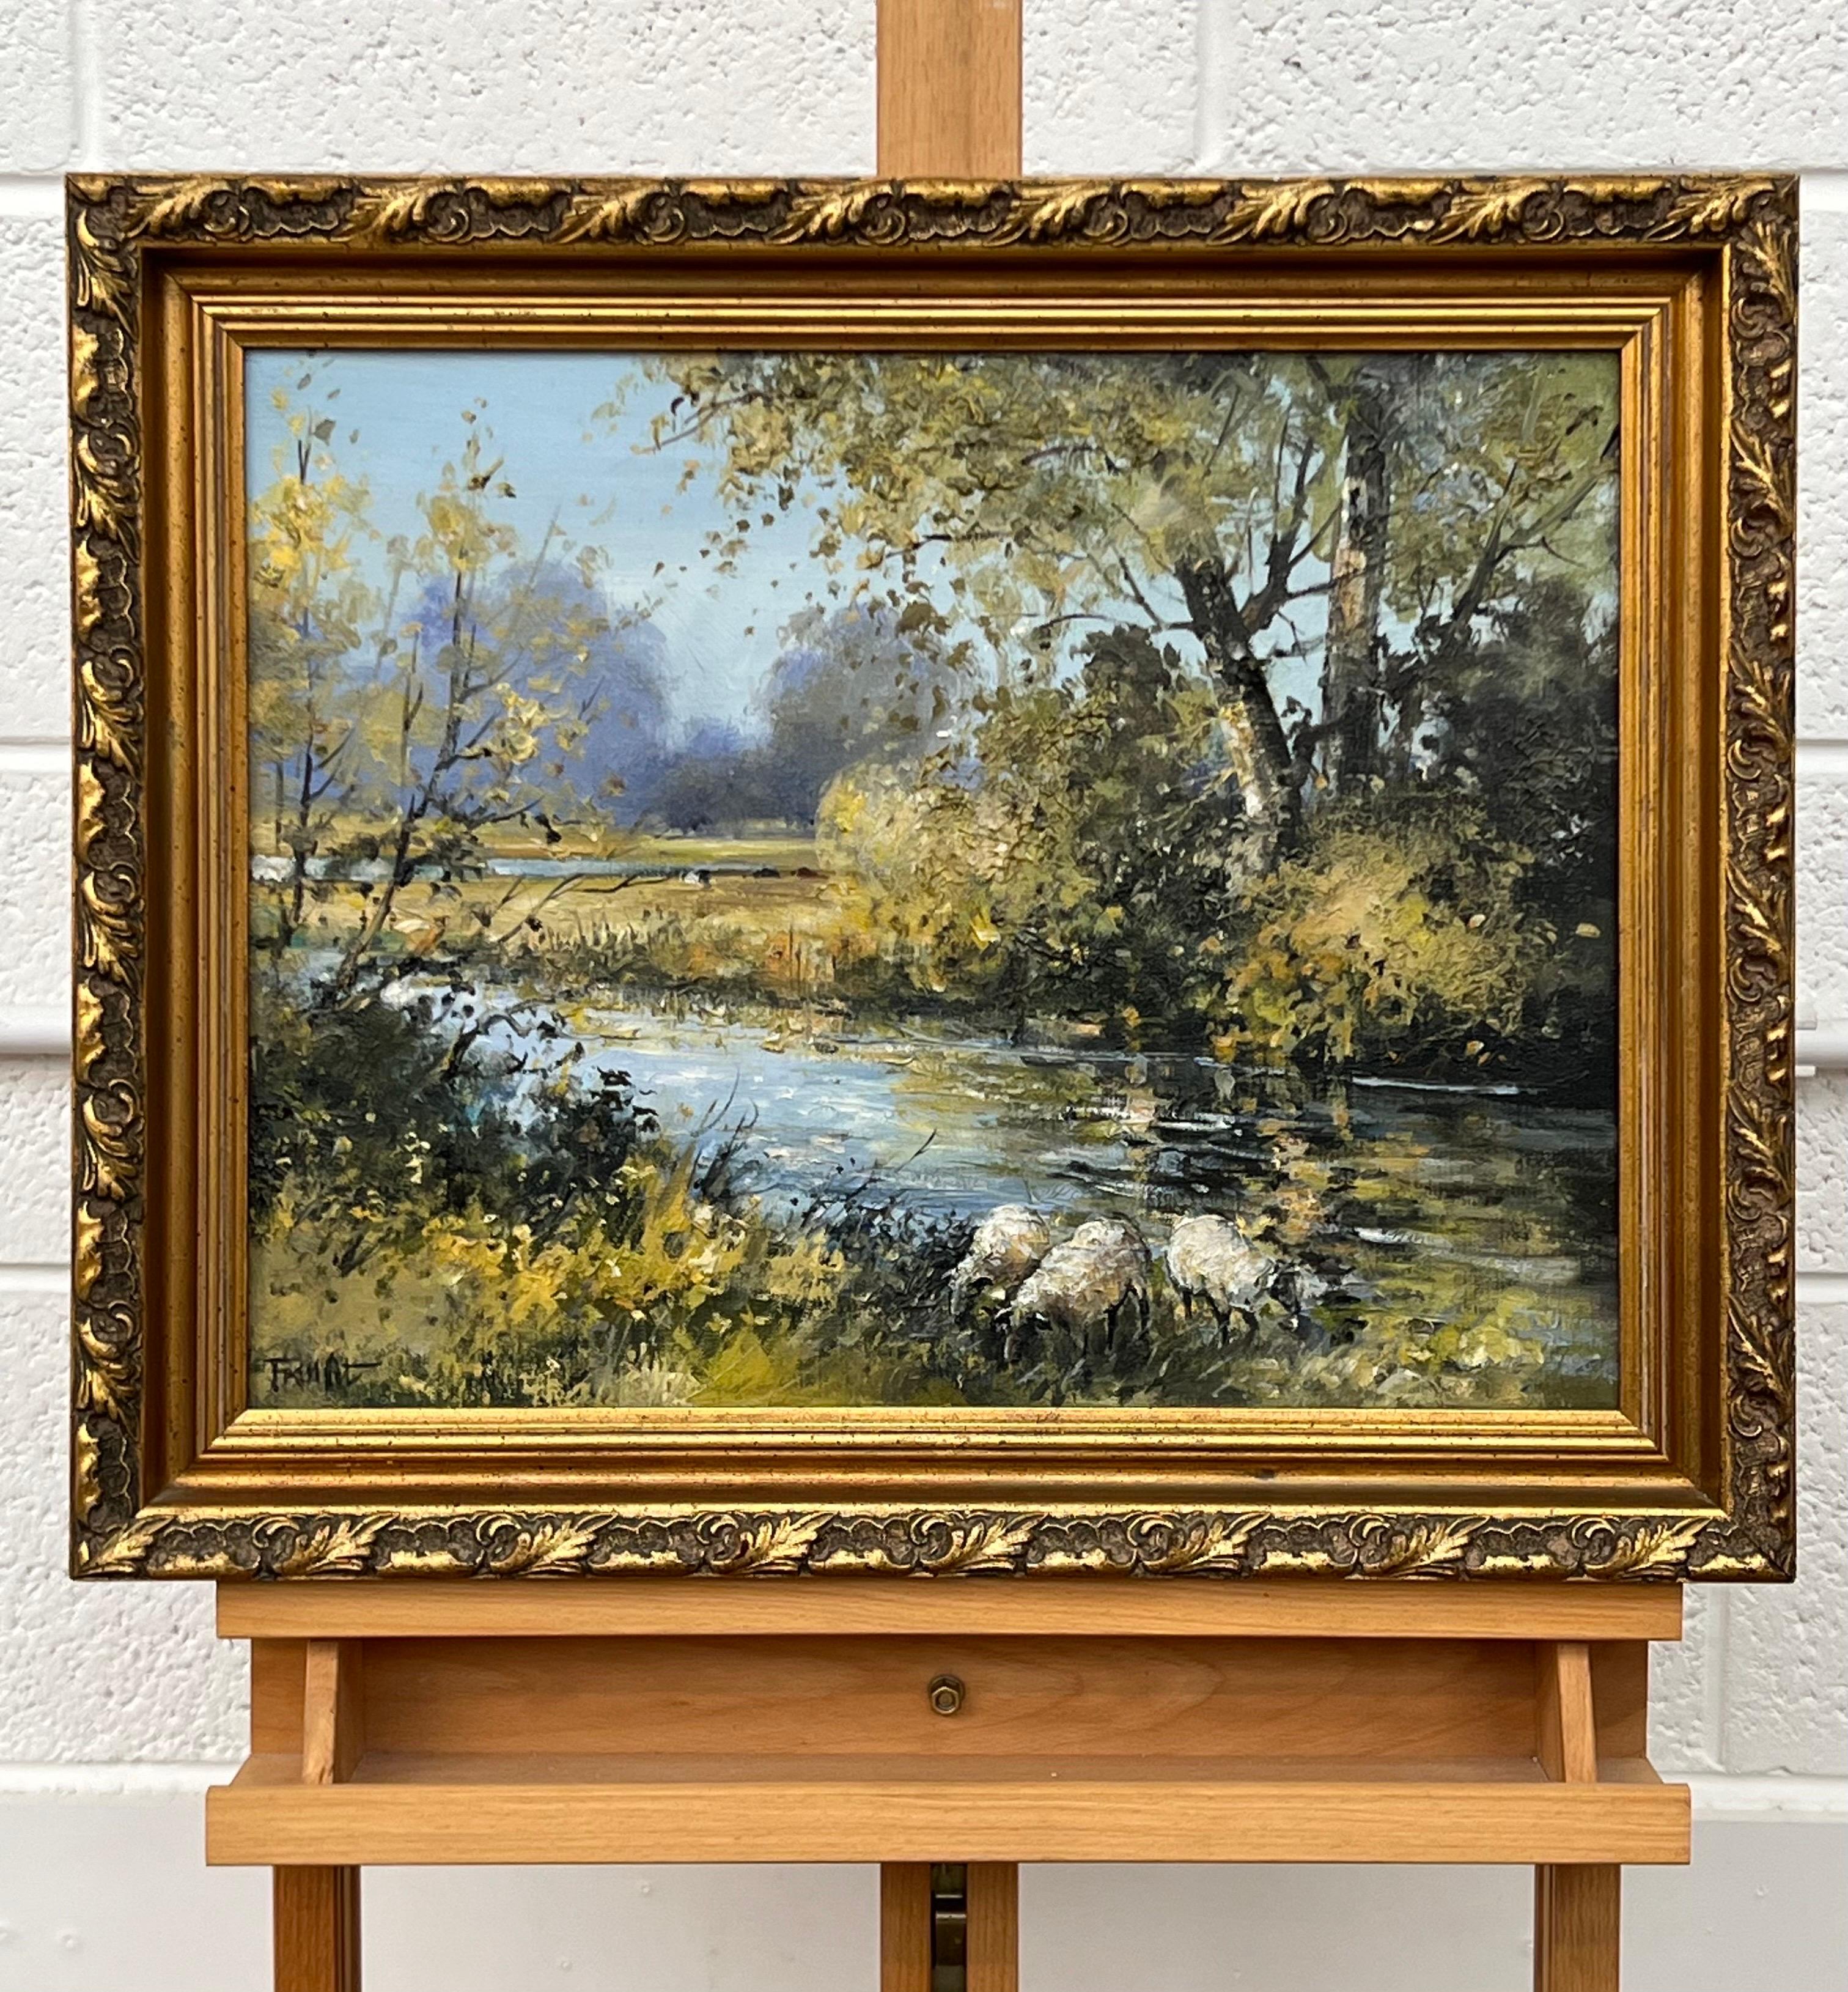 Schafe von einer Idyllic Tree Lined River Landscape in Irland von moderner irischer Künstlerin im Angebot 6